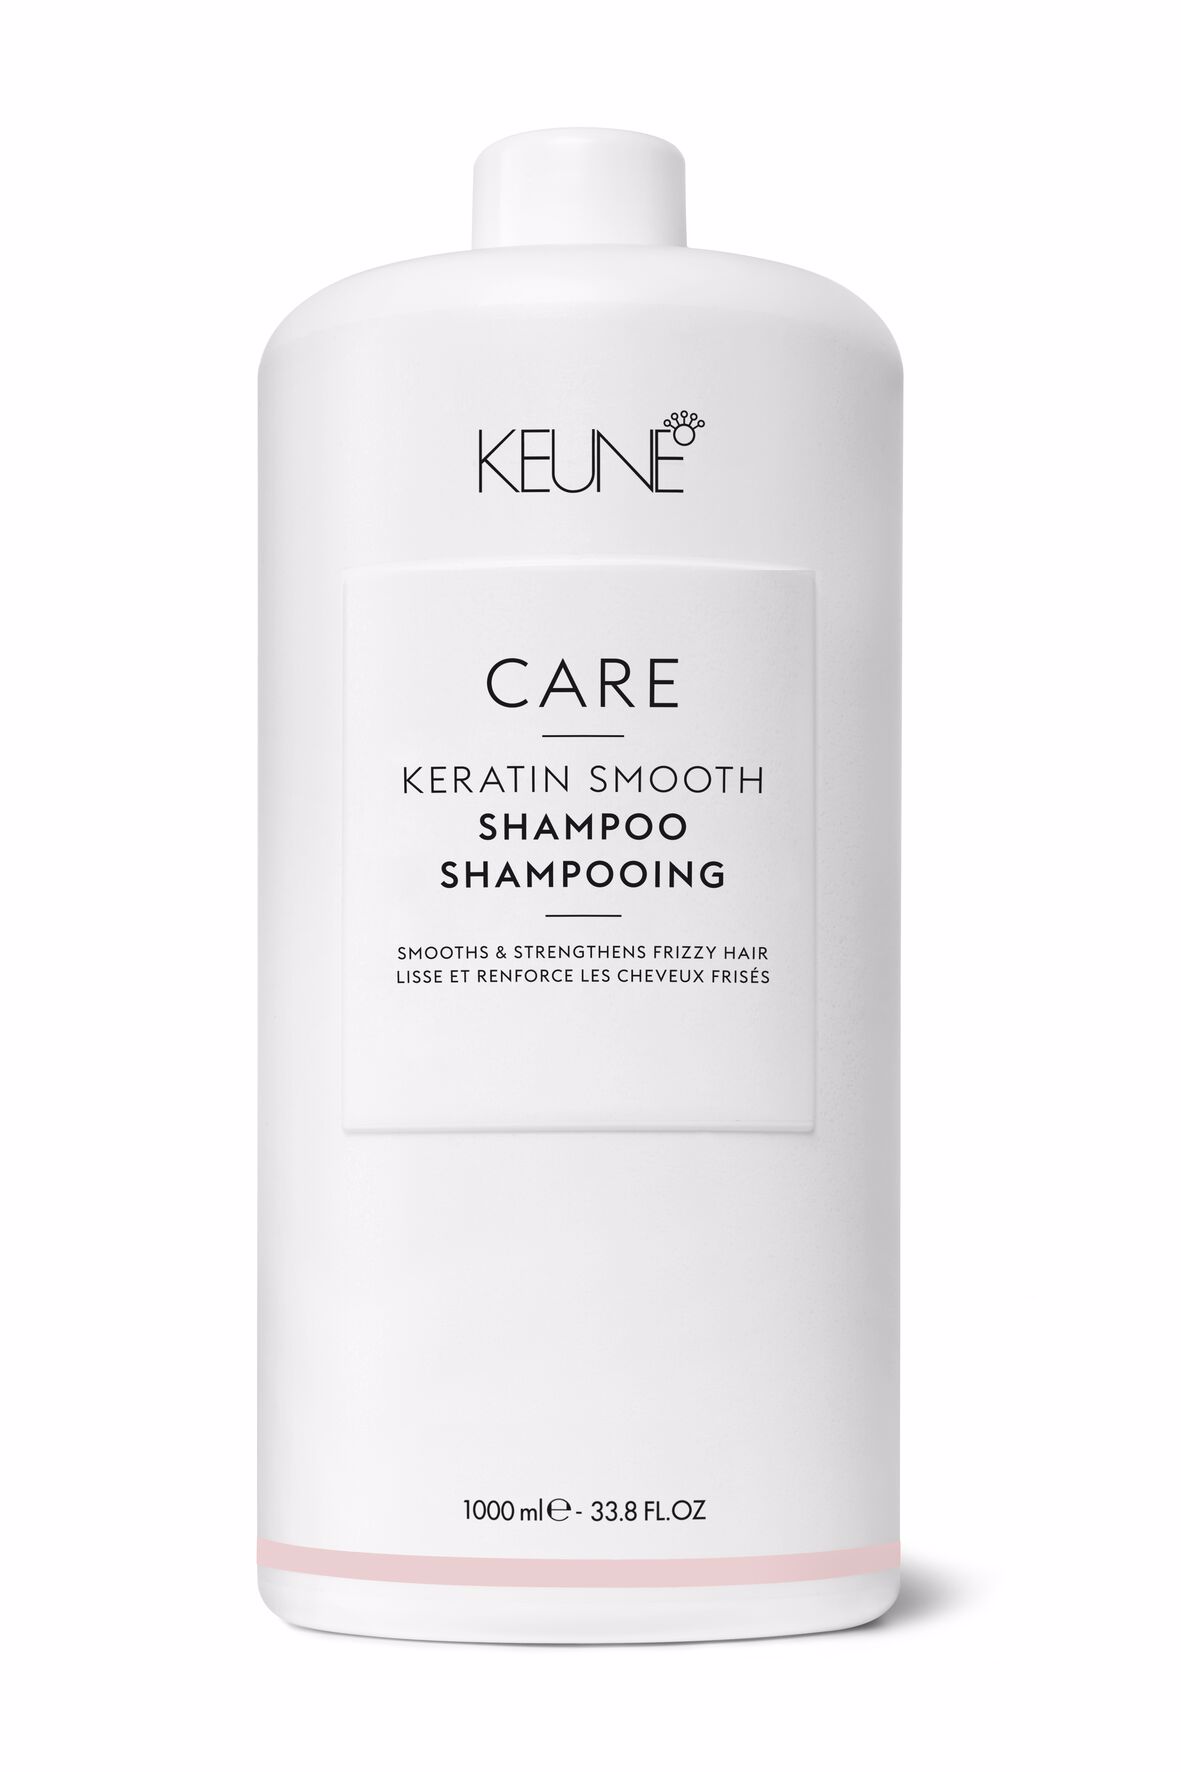 CARE Keratin Smooth Shampoo